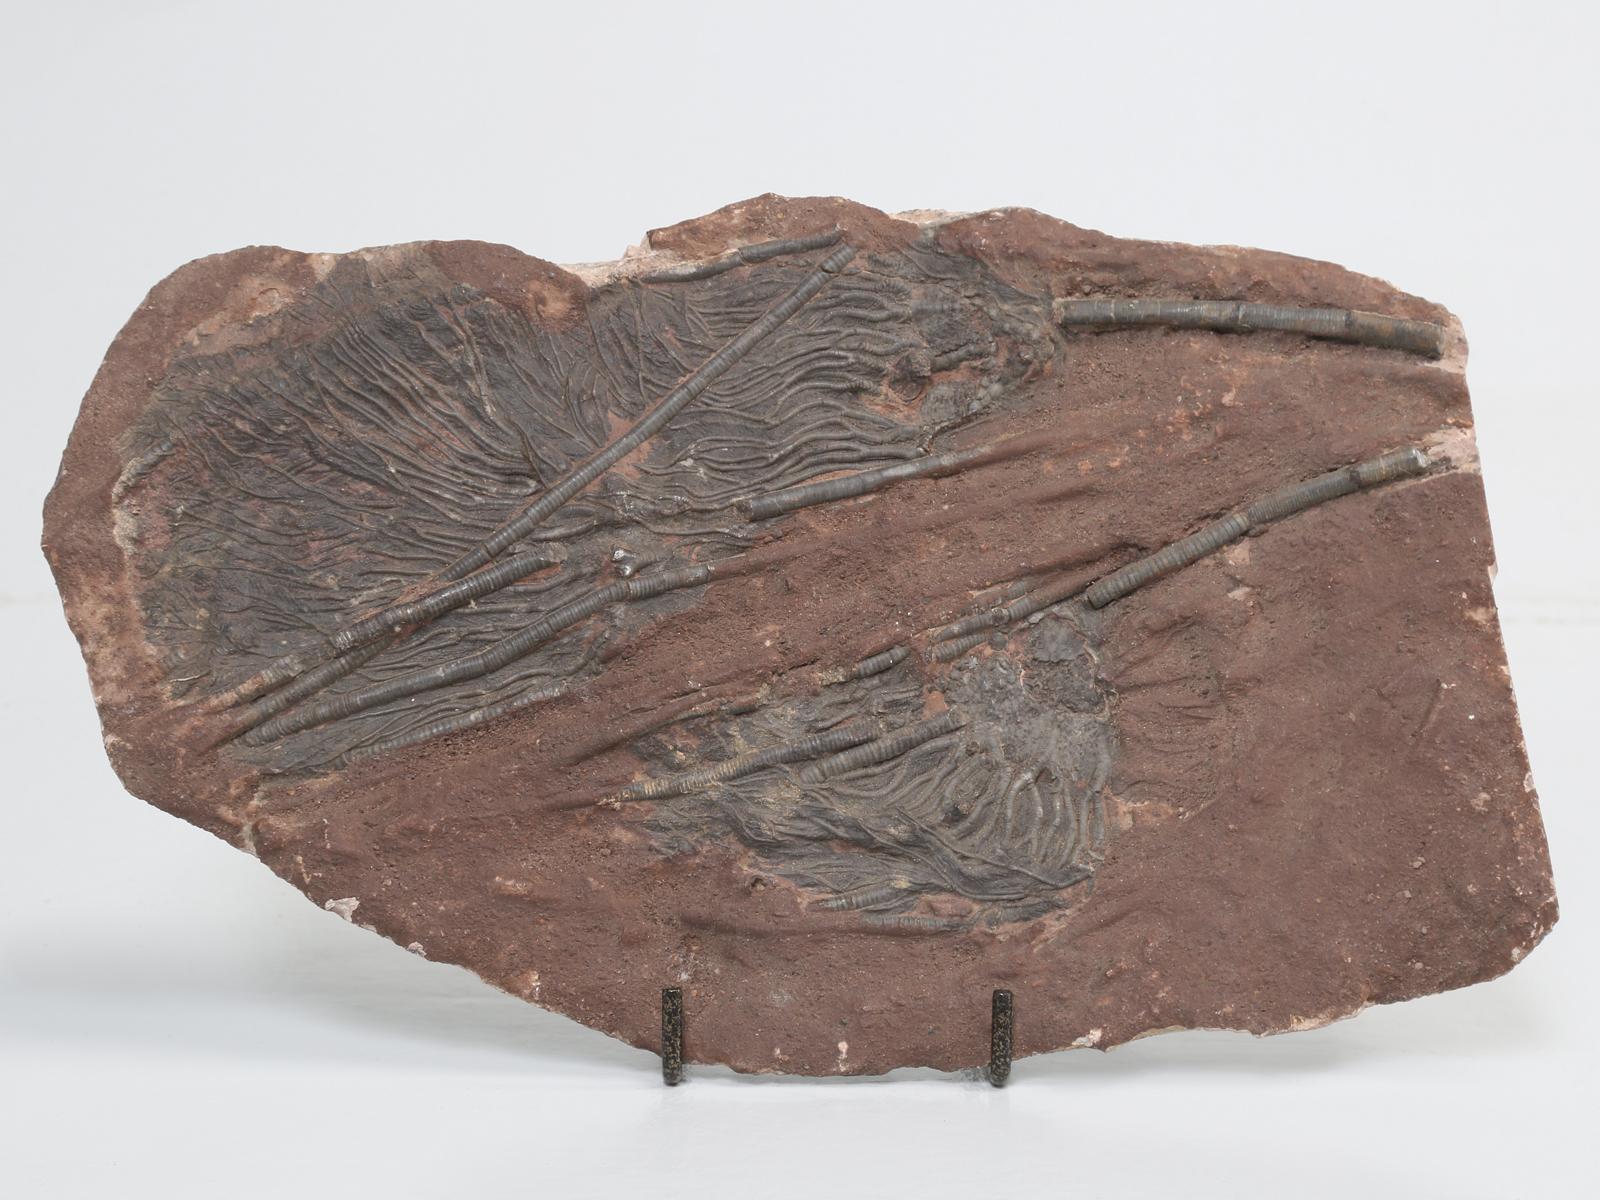 Marokkanisches Fossil namens Crinoid, das etwa 450 Millionen Jahre alt ist. Seelilien gehören zum Stamm der Stachelhäuter (Echinodermata). Unsere Crinoiden-Fossilienplatte wurde in Marokko ausgegraben. Diese Fossilien haben das Aussehen von